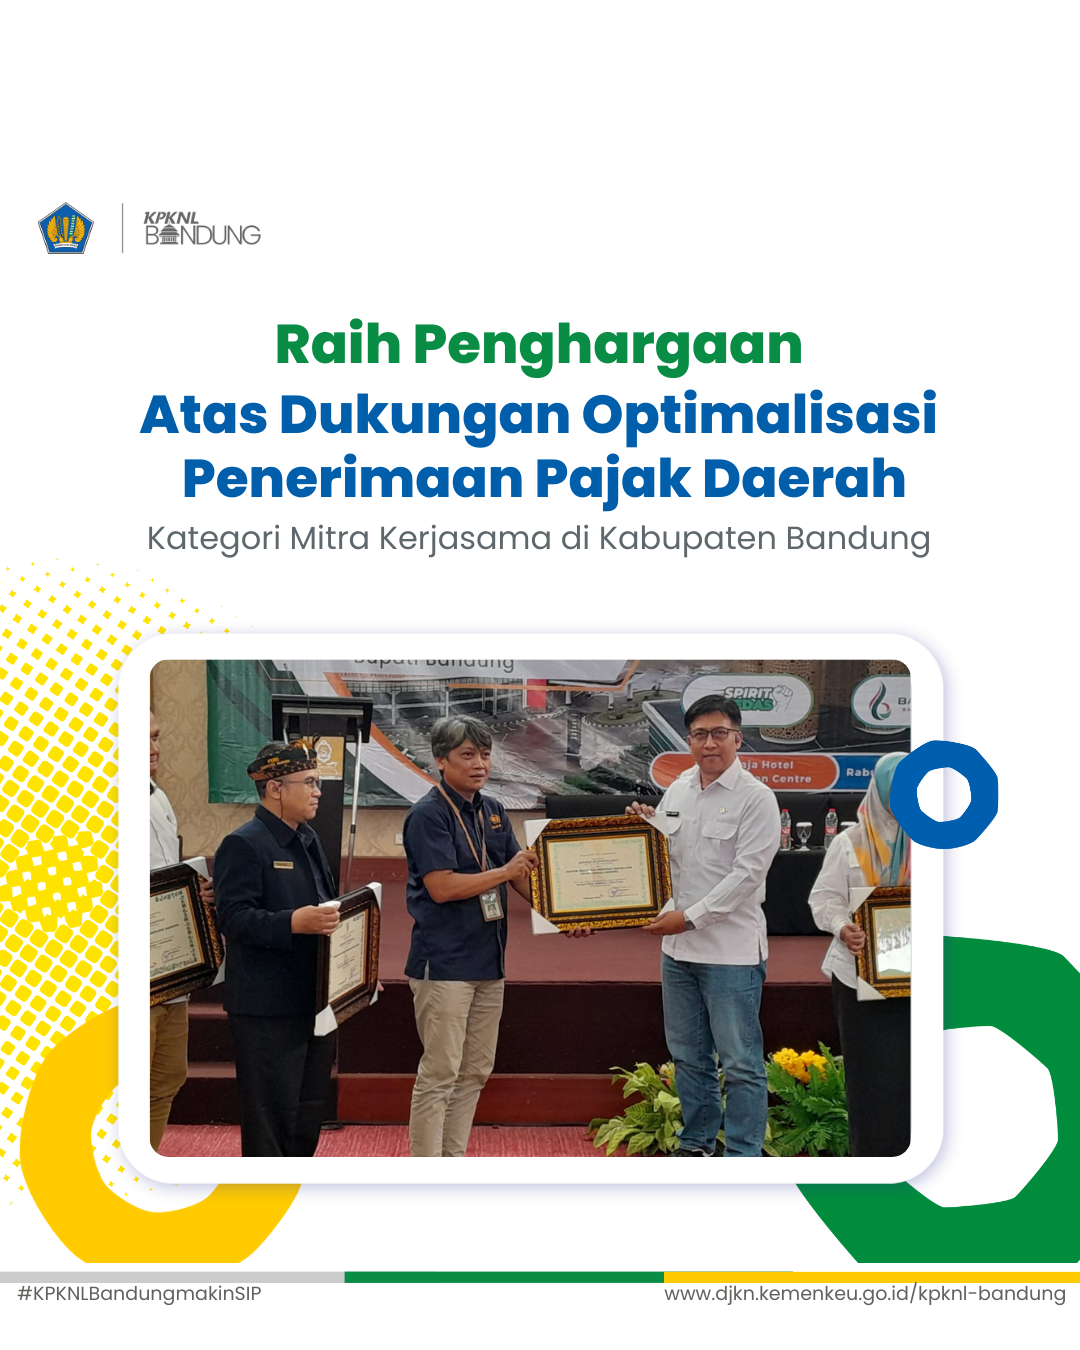 KPKNL Bandung Raih Penghargaan Dukungan Optimalisasi Penerimaan Pajak Daerah